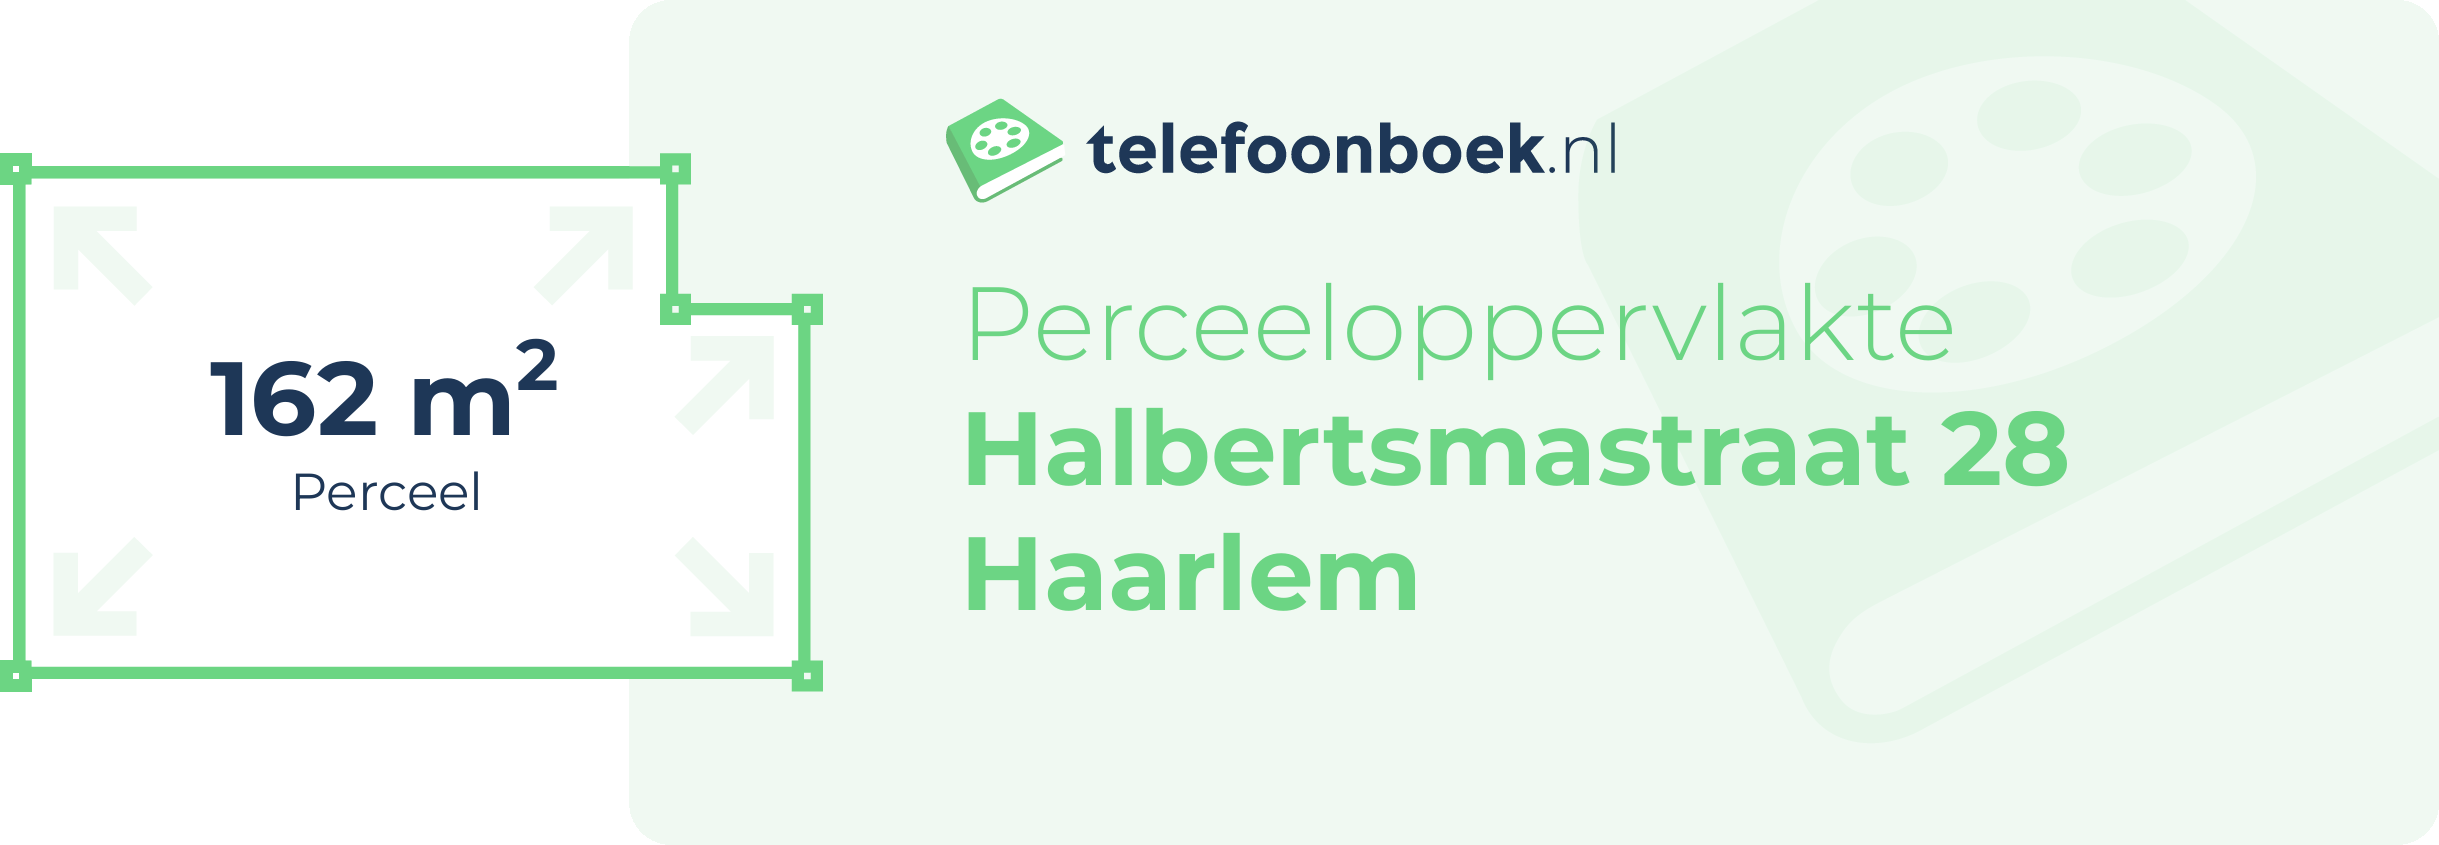 Perceeloppervlakte Halbertsmastraat 28 Haarlem